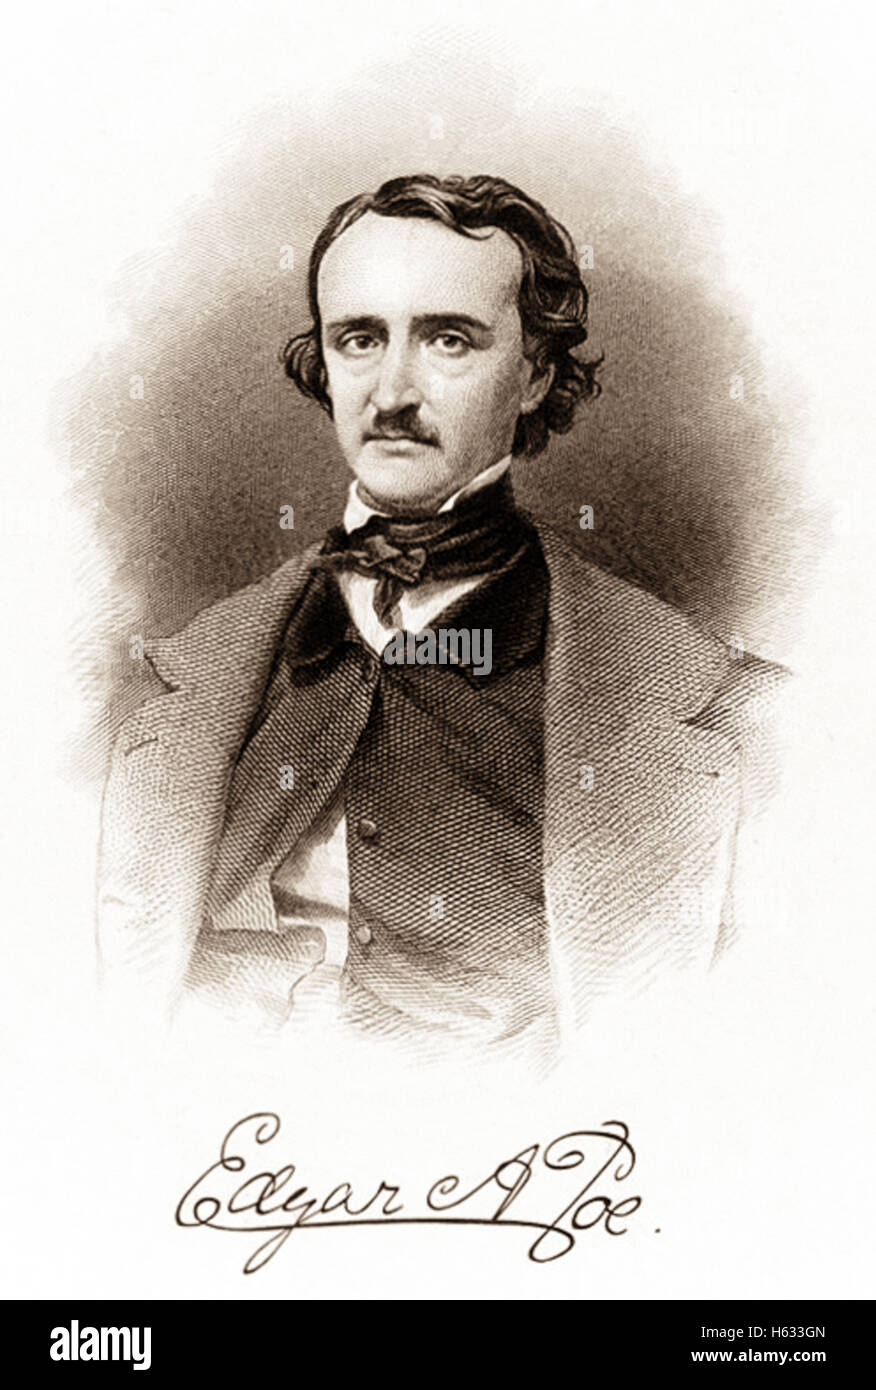 Portrait und Signatur von Poe (1809-1849), gestochen von R. Andersen ca. 1850. Siehe Beschreibung für mehr Informationen. Stockfoto